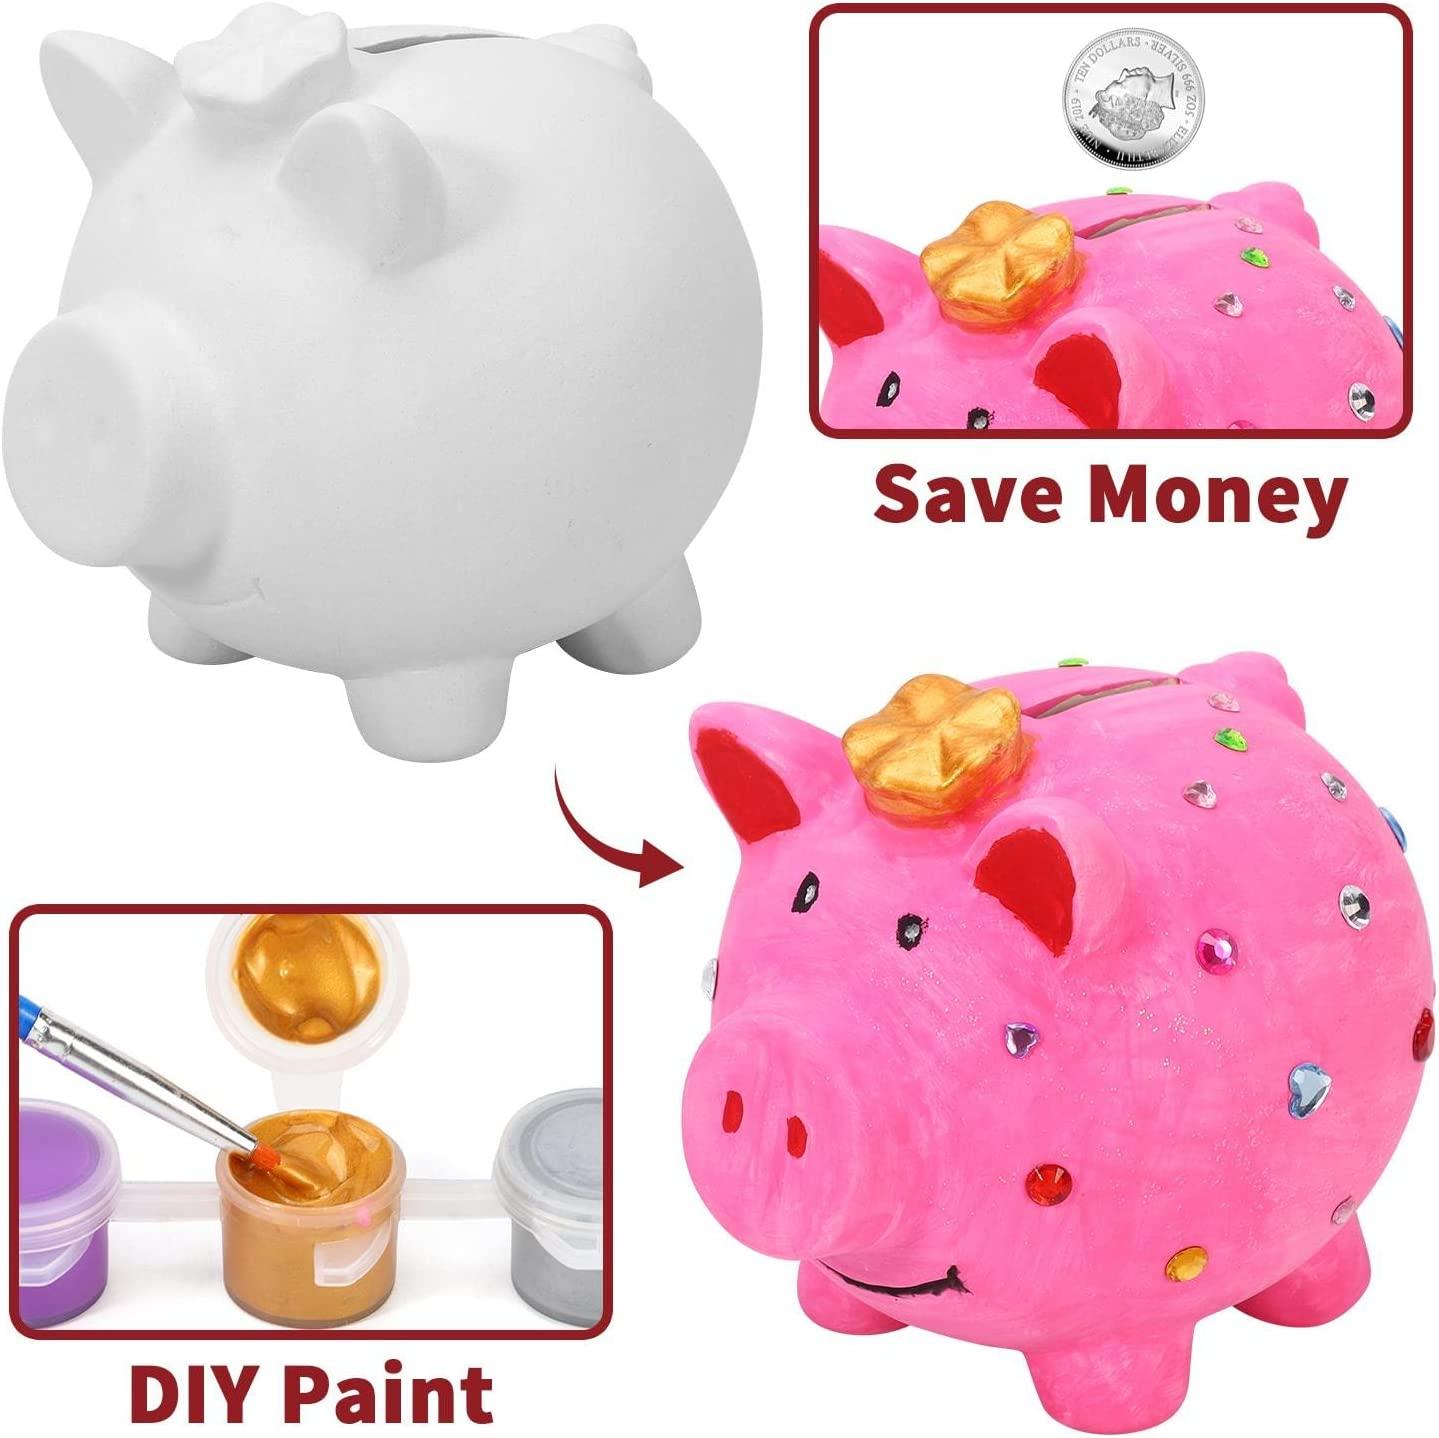 Paint Your Own Money Piggy Box Arts & Crafts Activity Kit  - Pig